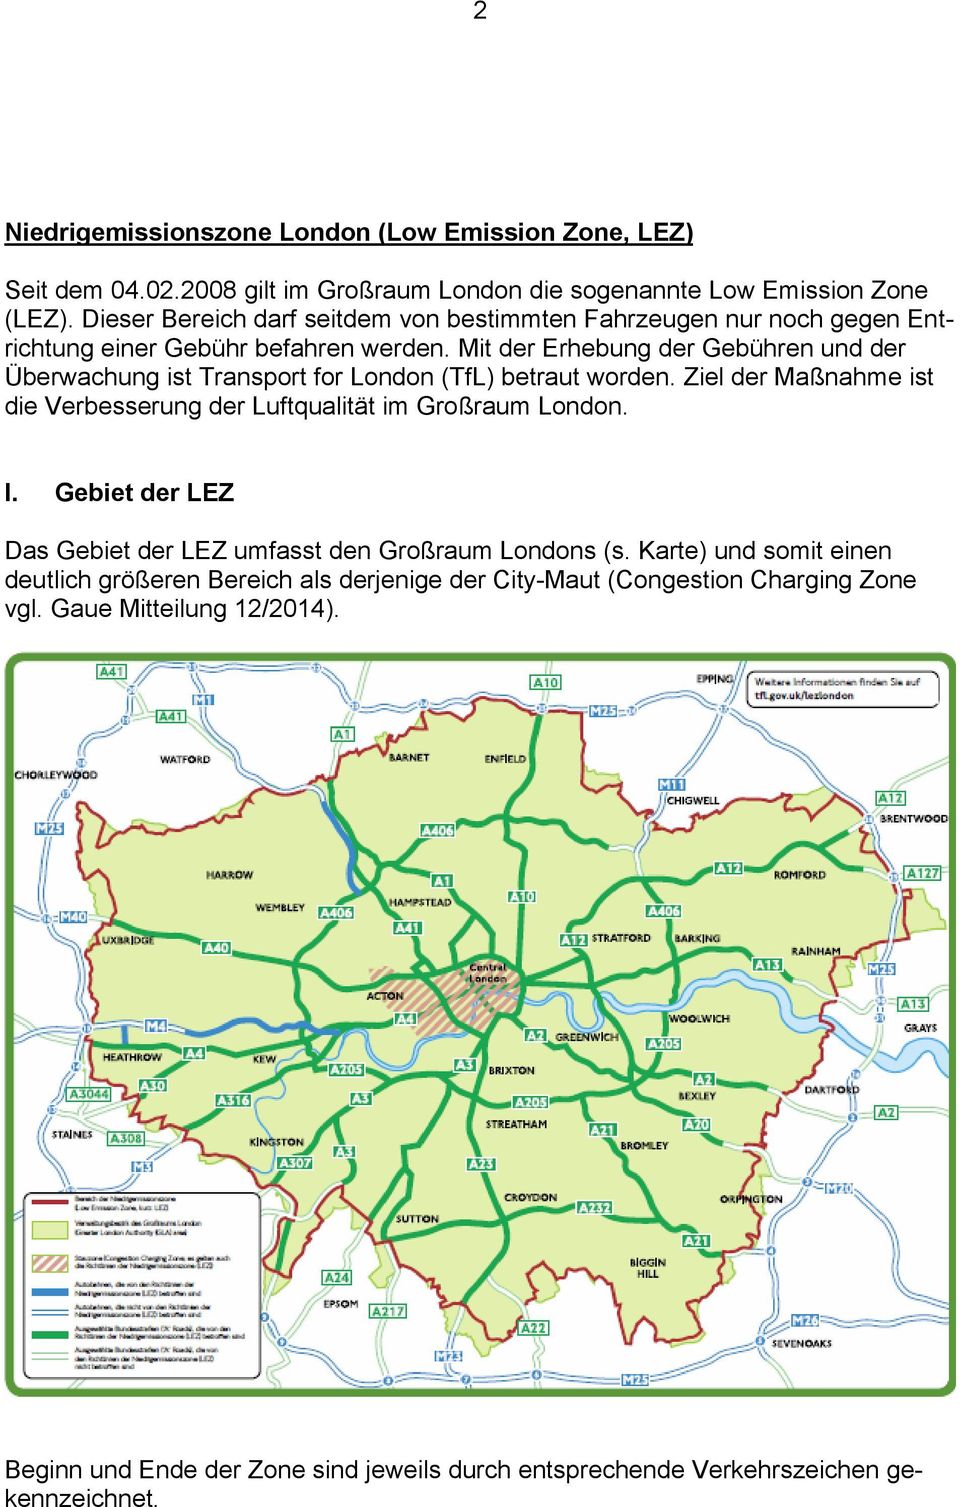 Mit der Erhebung der Gebühren und der Überwachung ist Transport for London (TfL) betraut worden. Ziel der Maßnahme ist die Verbesserung der Luftqualität im Großraum London. I.